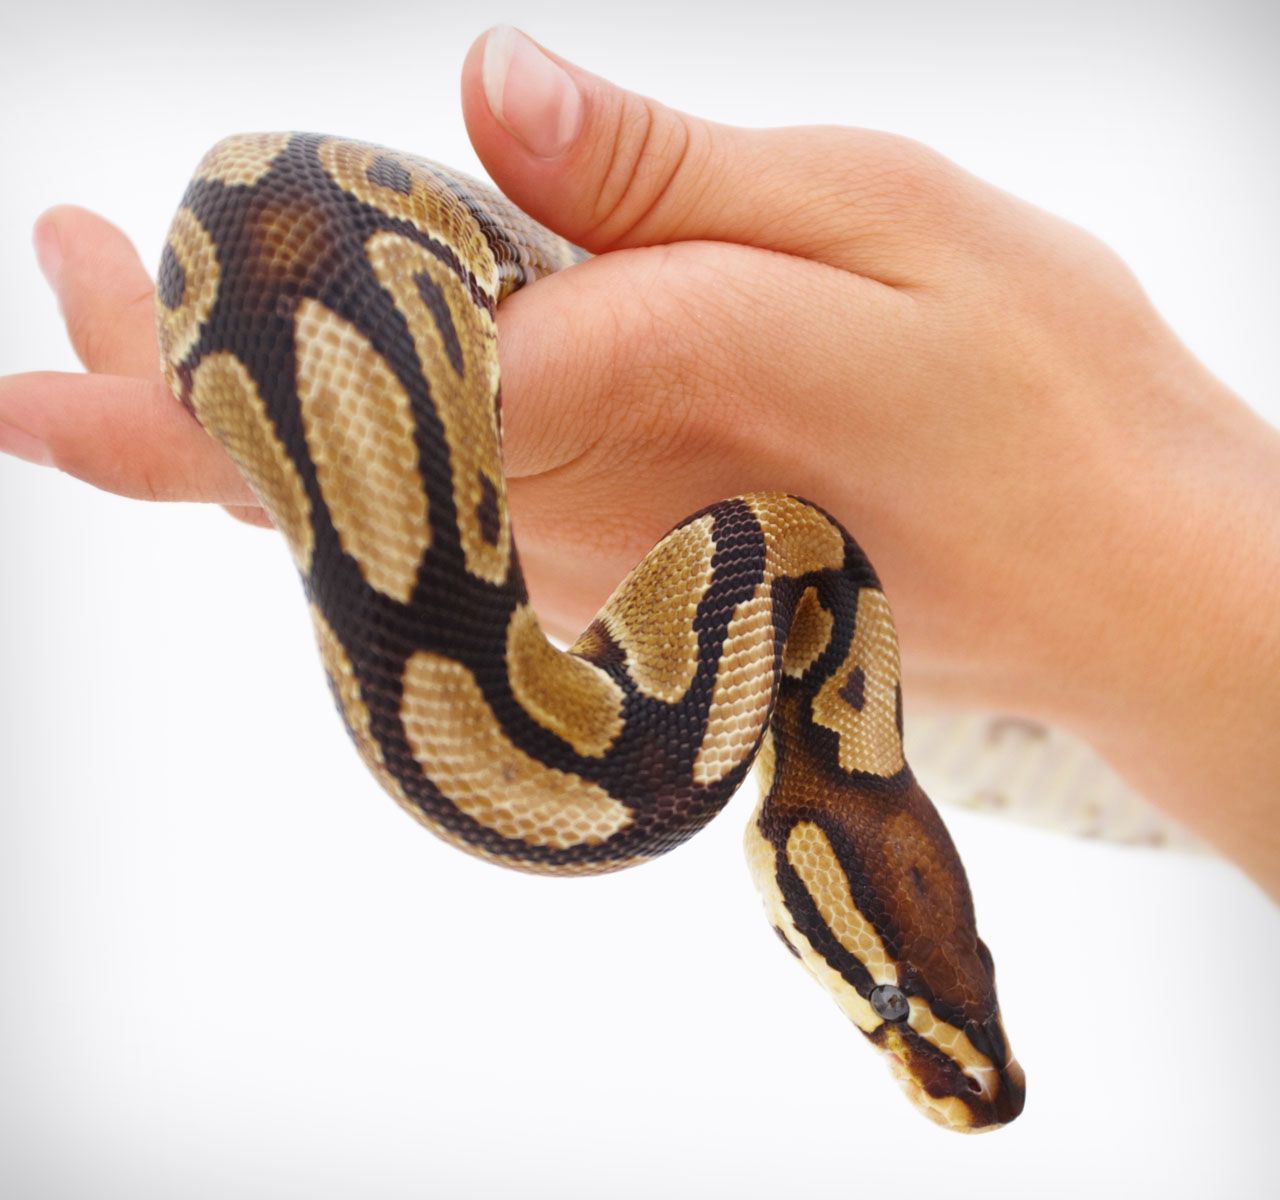 ball python for sale petsmart